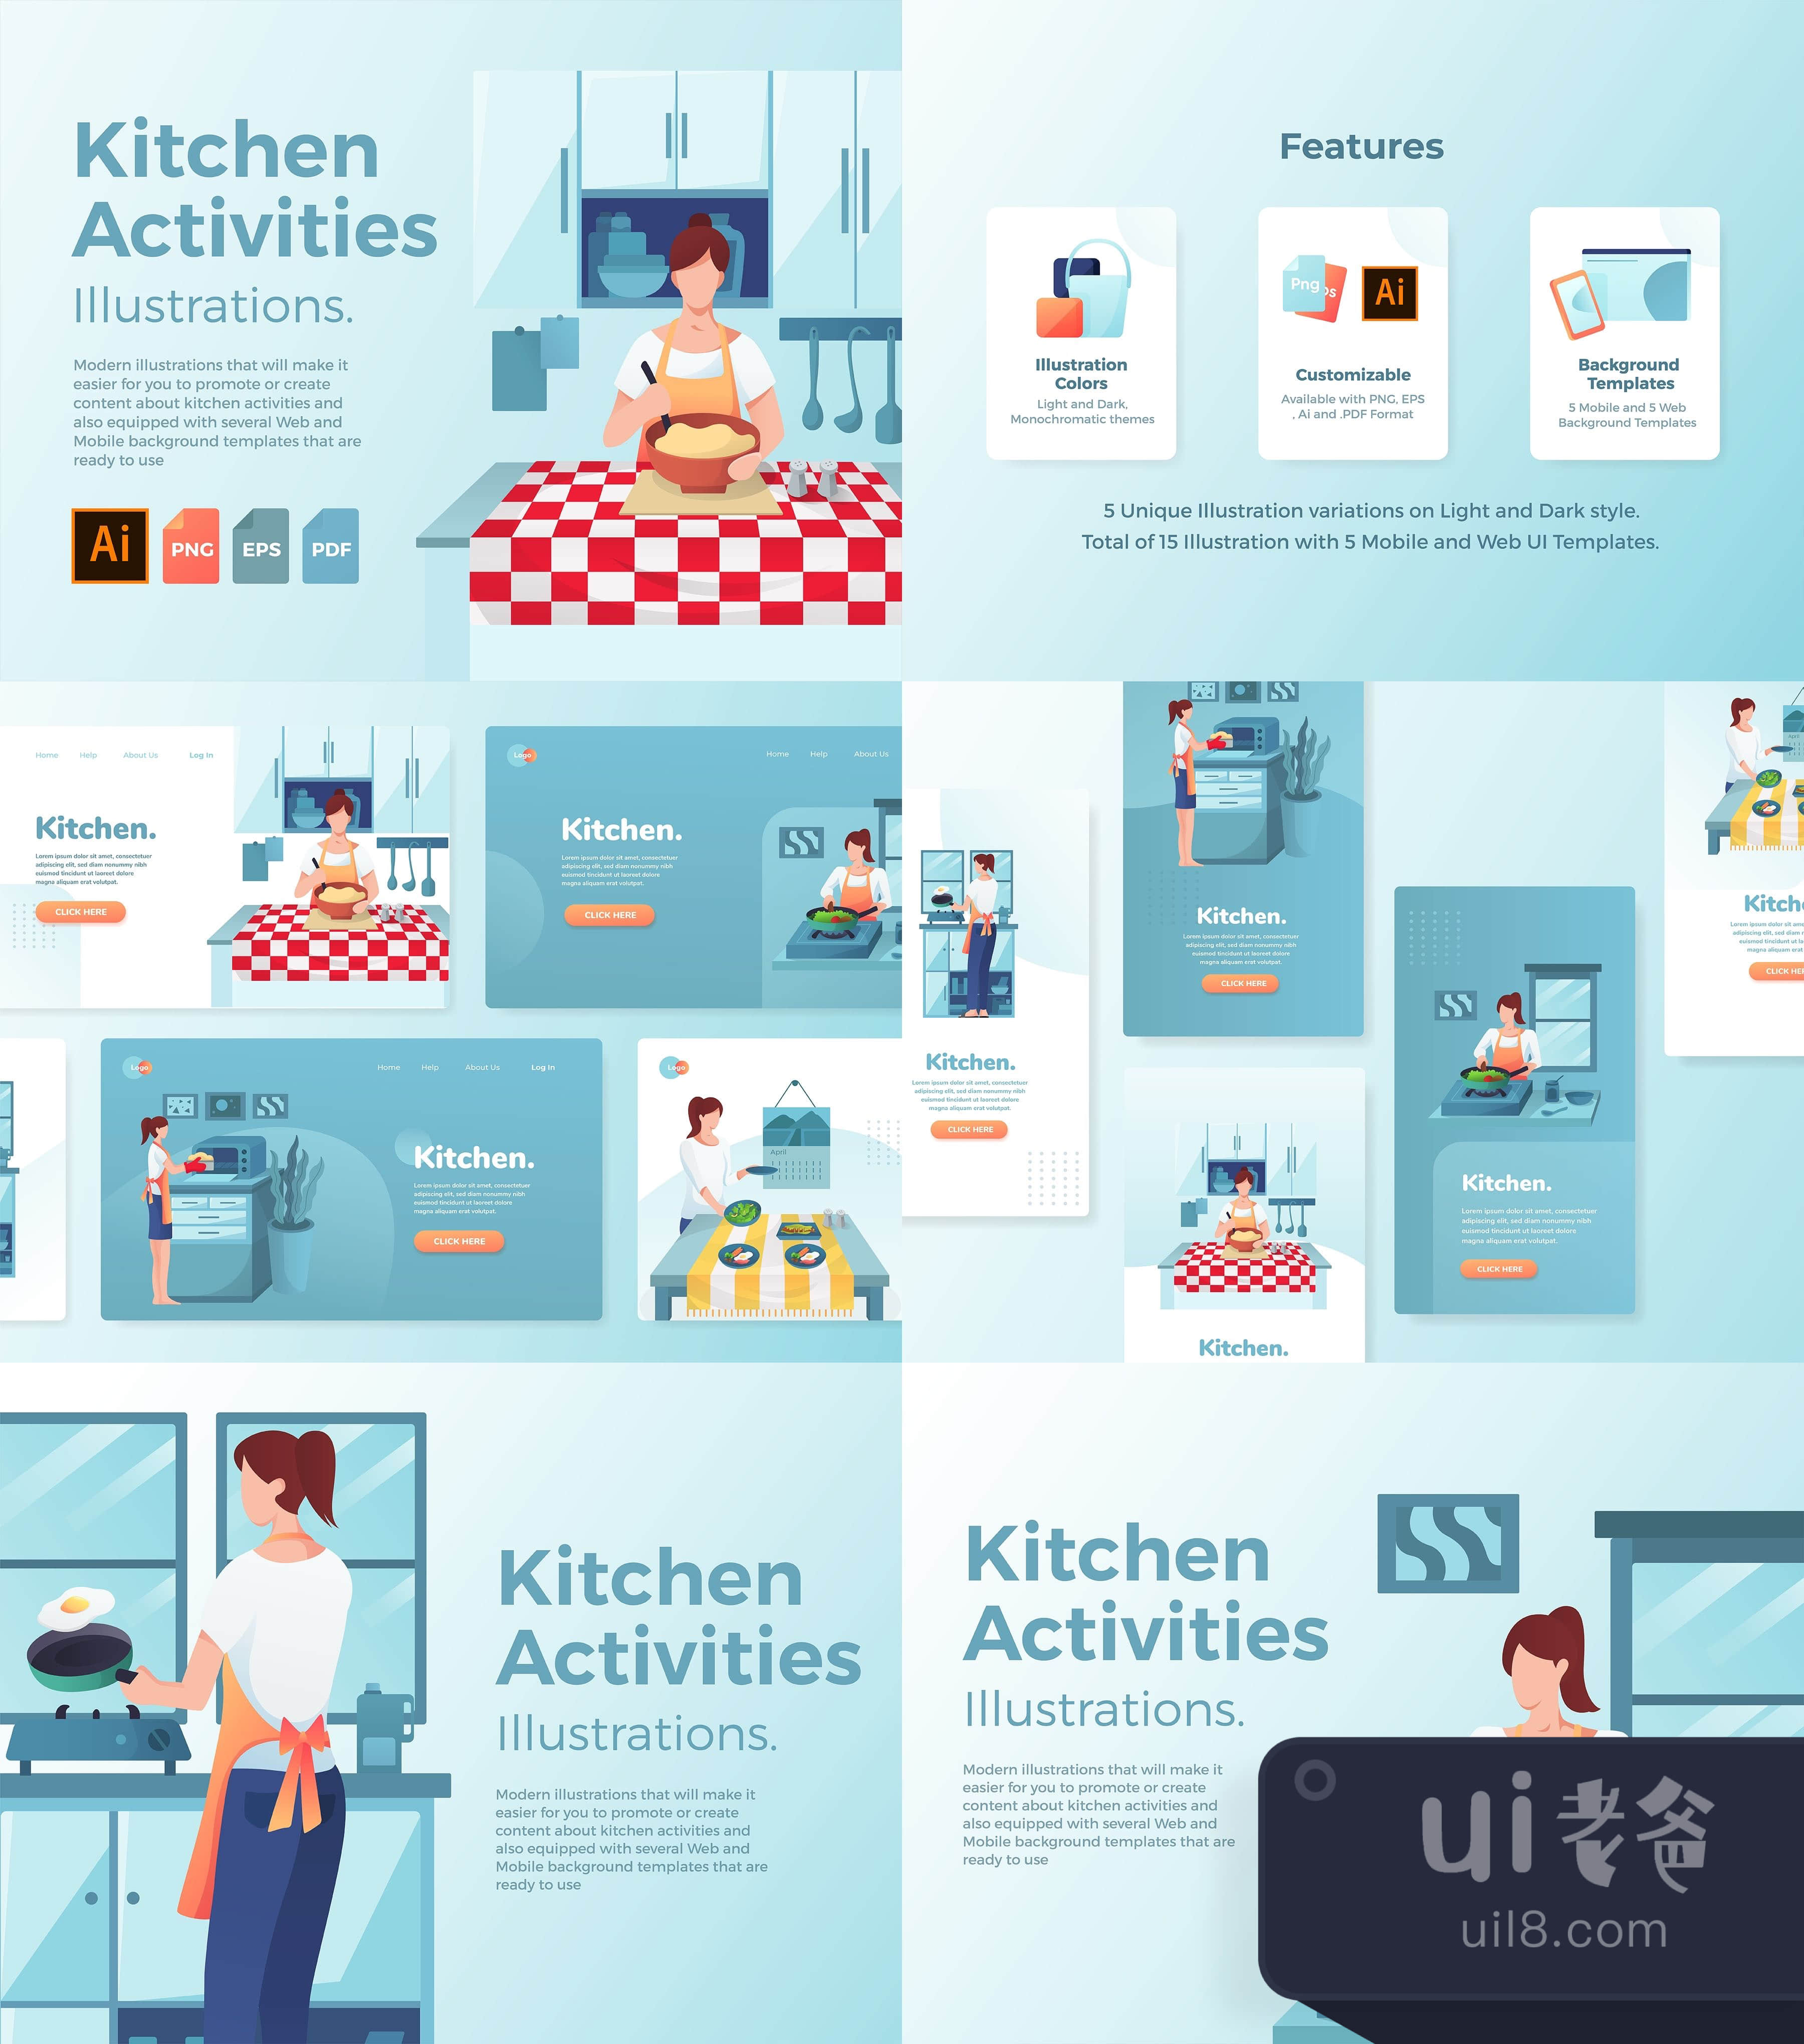 厨房活动插图 (Kitchen Activities Illustrations)插图